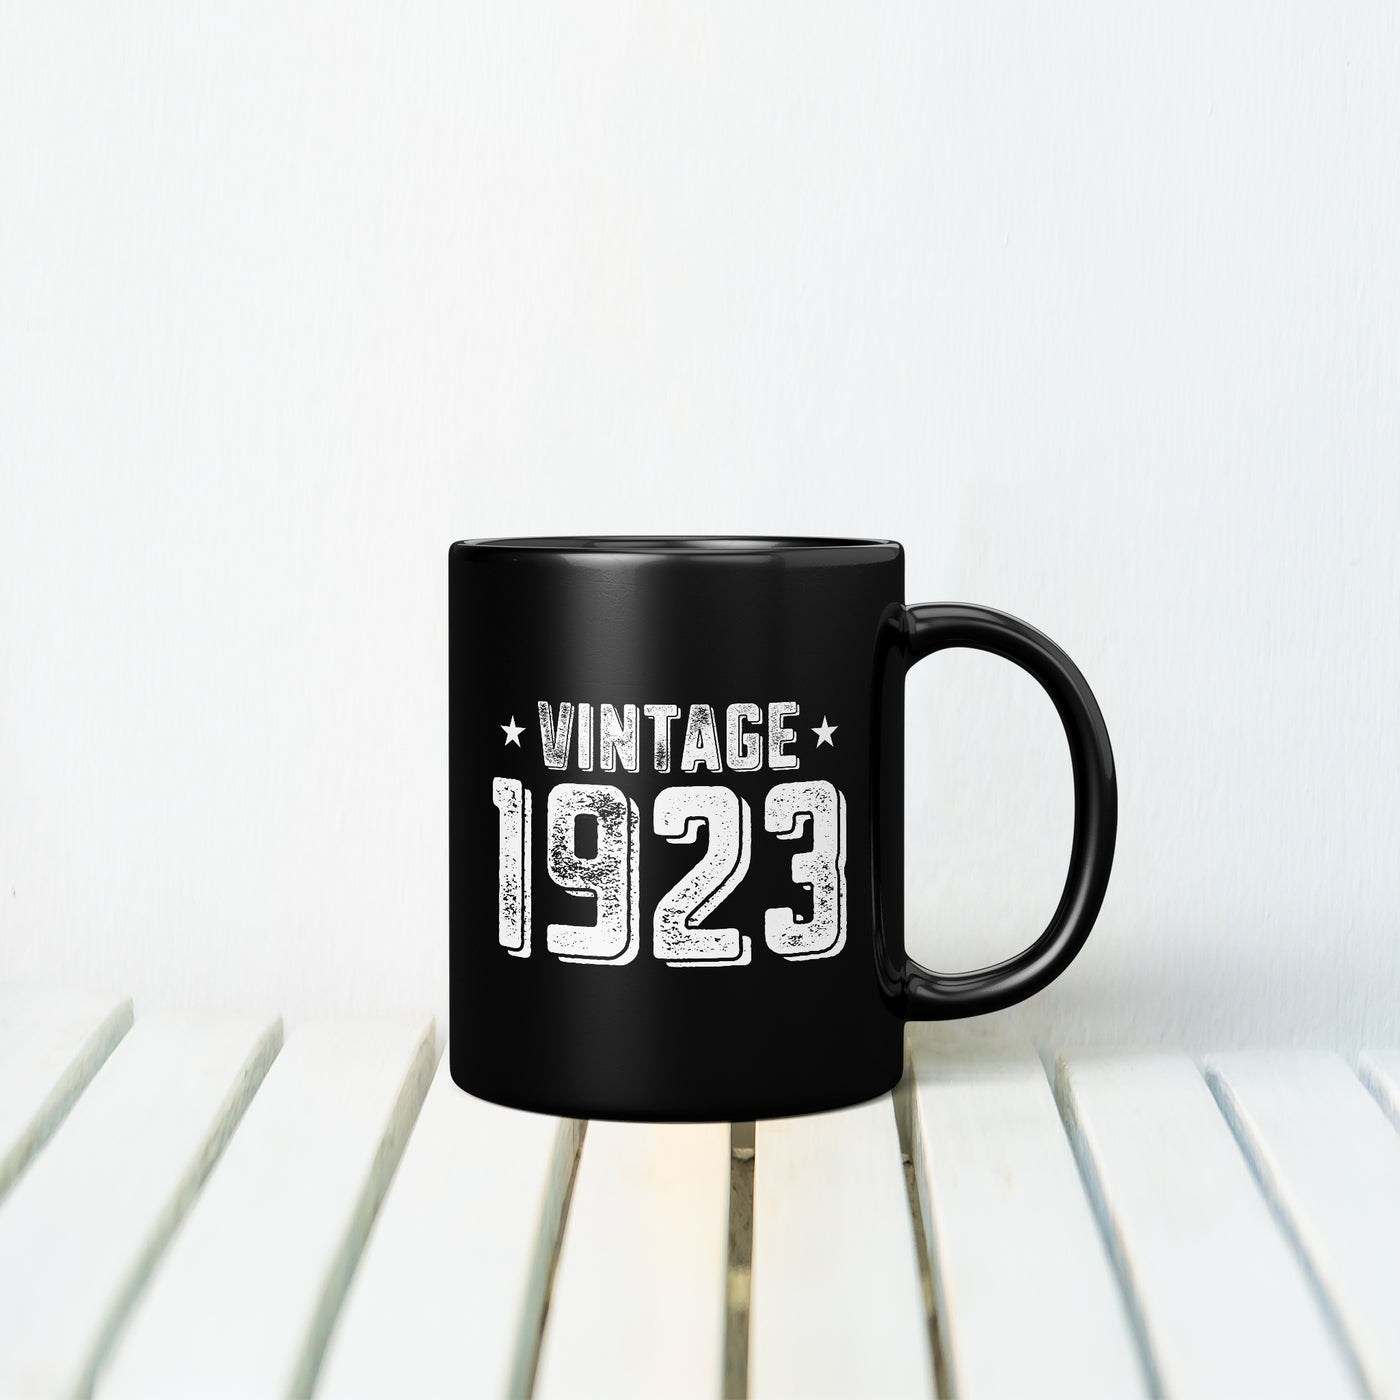 Vintage 1923 MUG